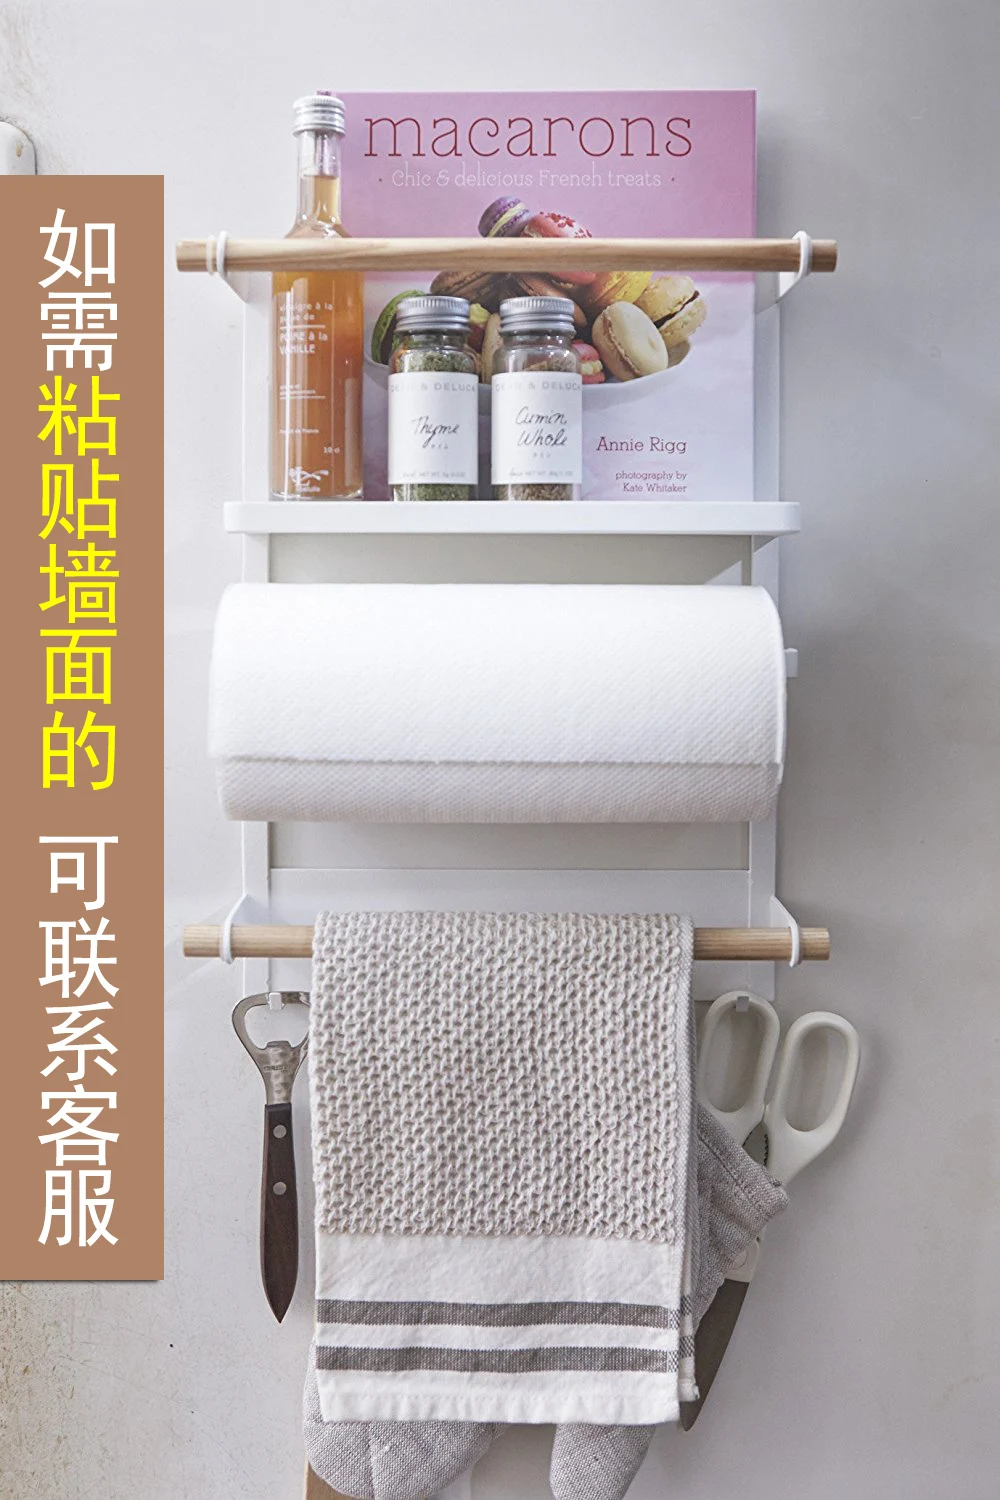 Домашняя кухонная Магнитная стойка для холодильника, боковая настенная подвесная бумажная полка для хранения полотенец, держатель для бутылок